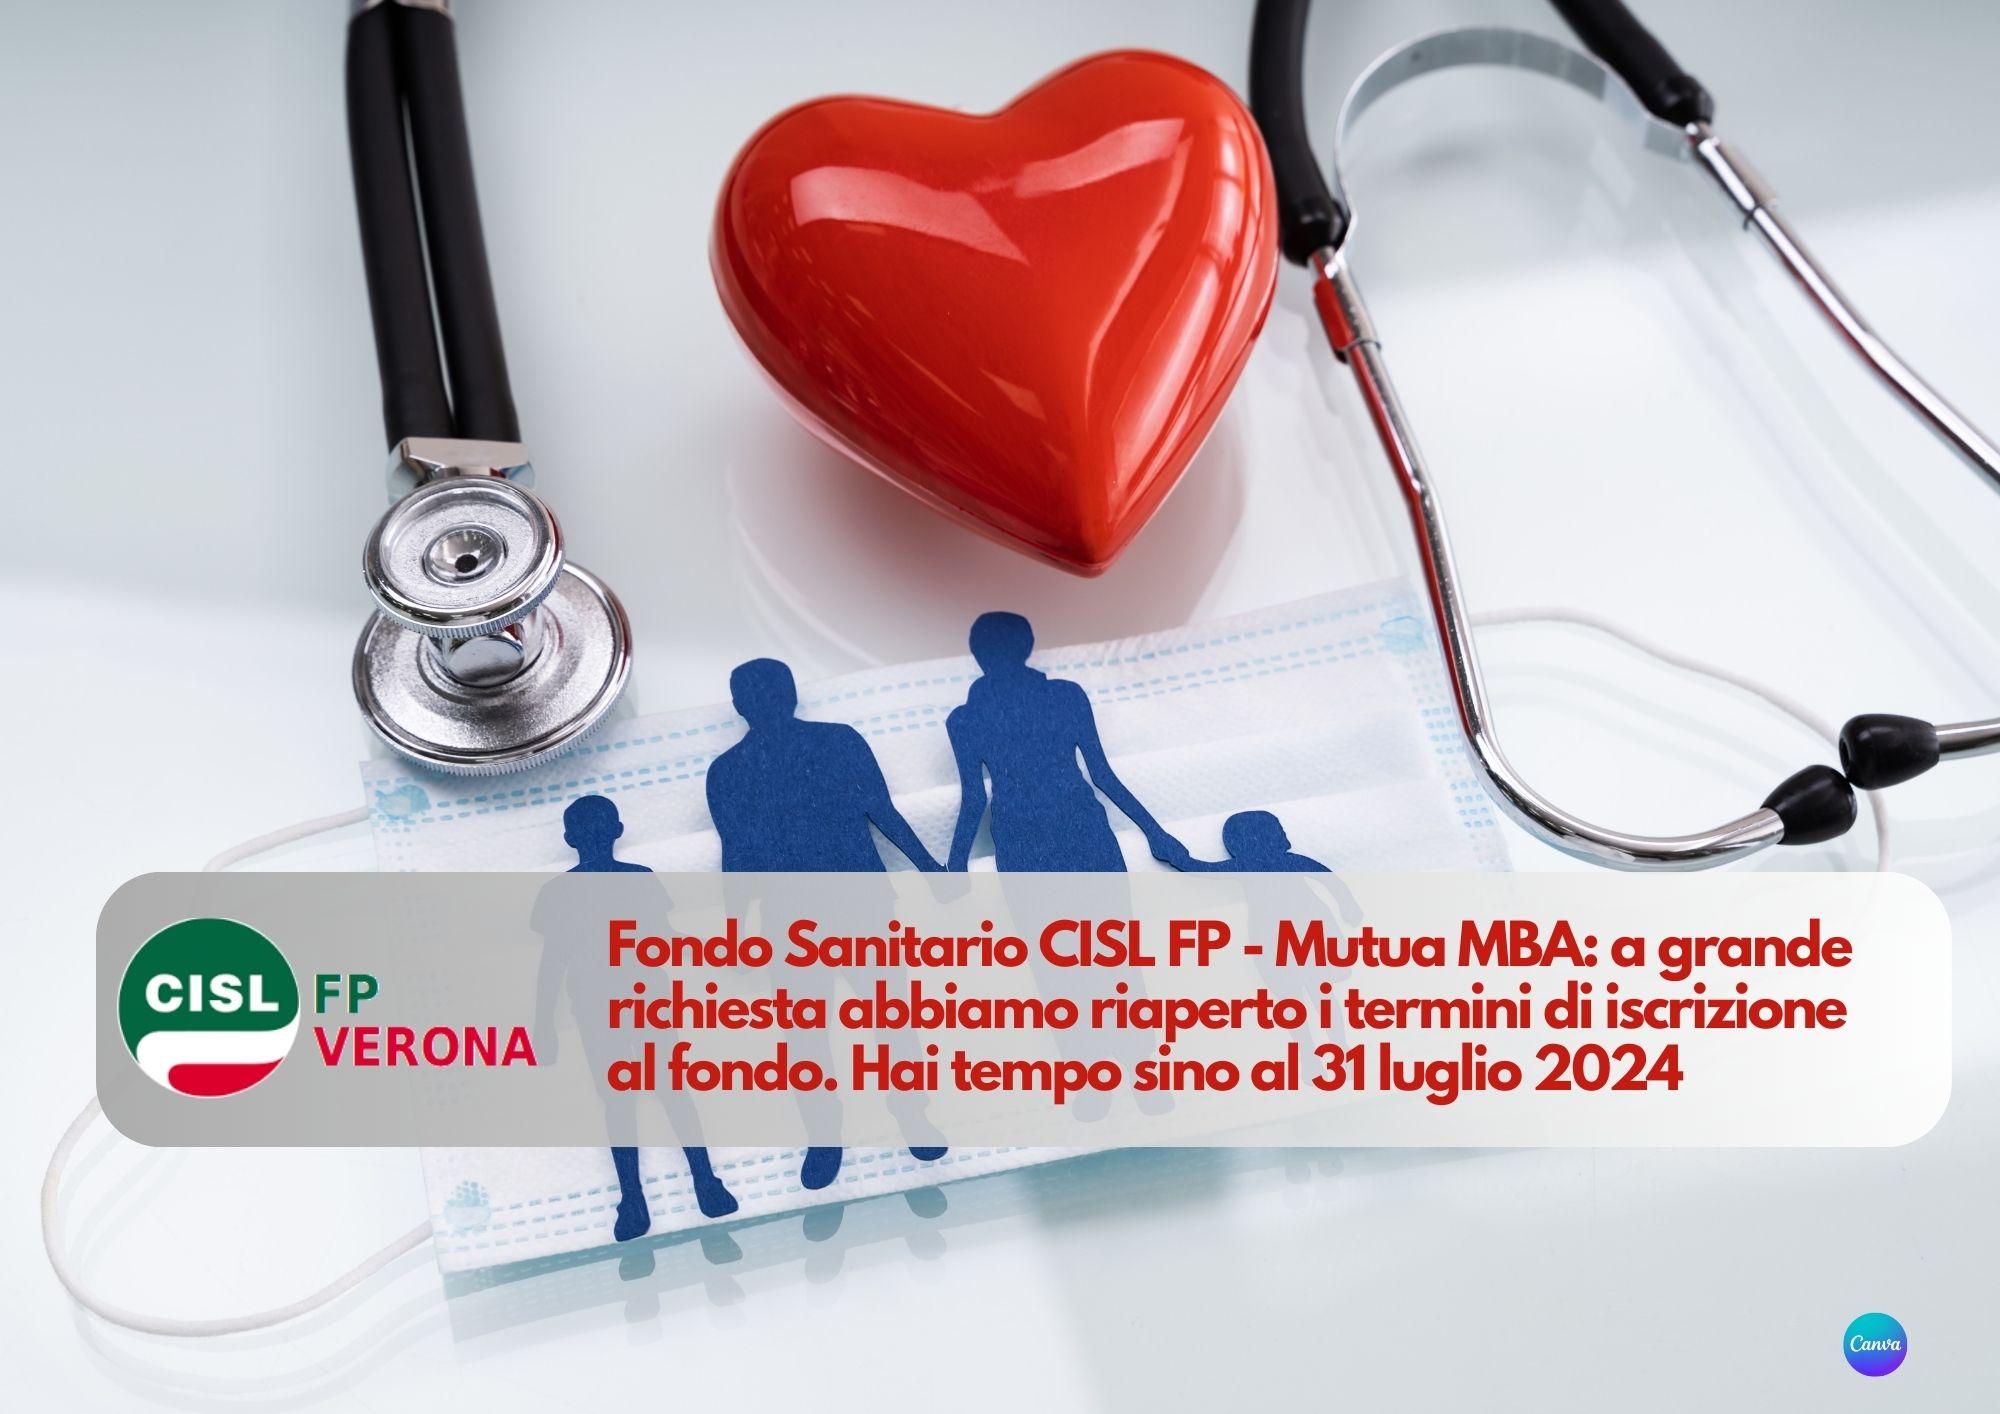 CISL FP Verona. Fondo Sanitario CISL FP - Mutua MBA: apertura adesione straordinaria